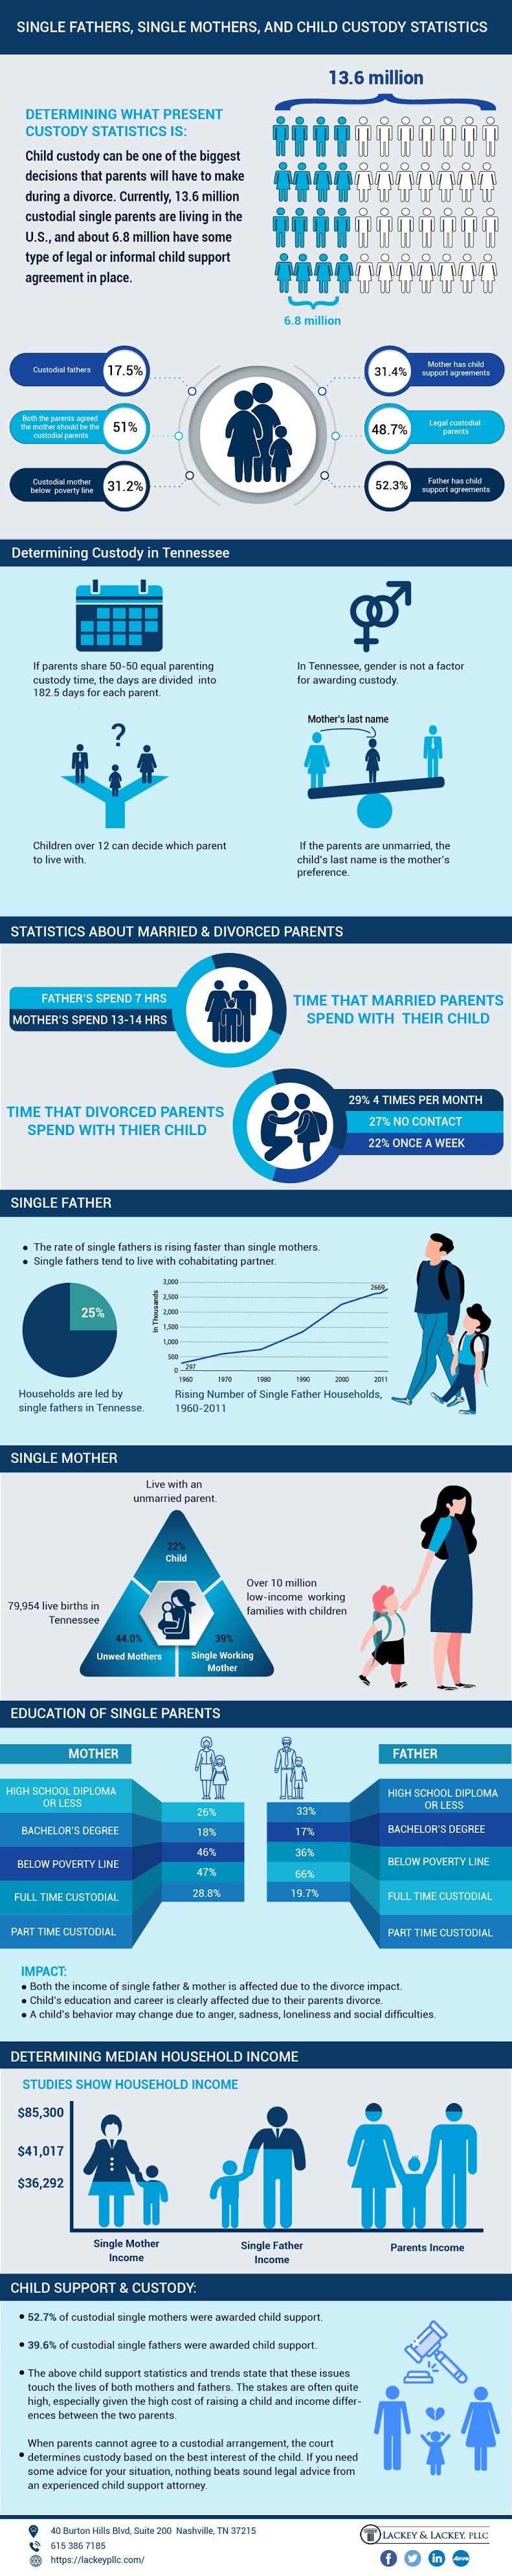 alleenstaande ouders infographic